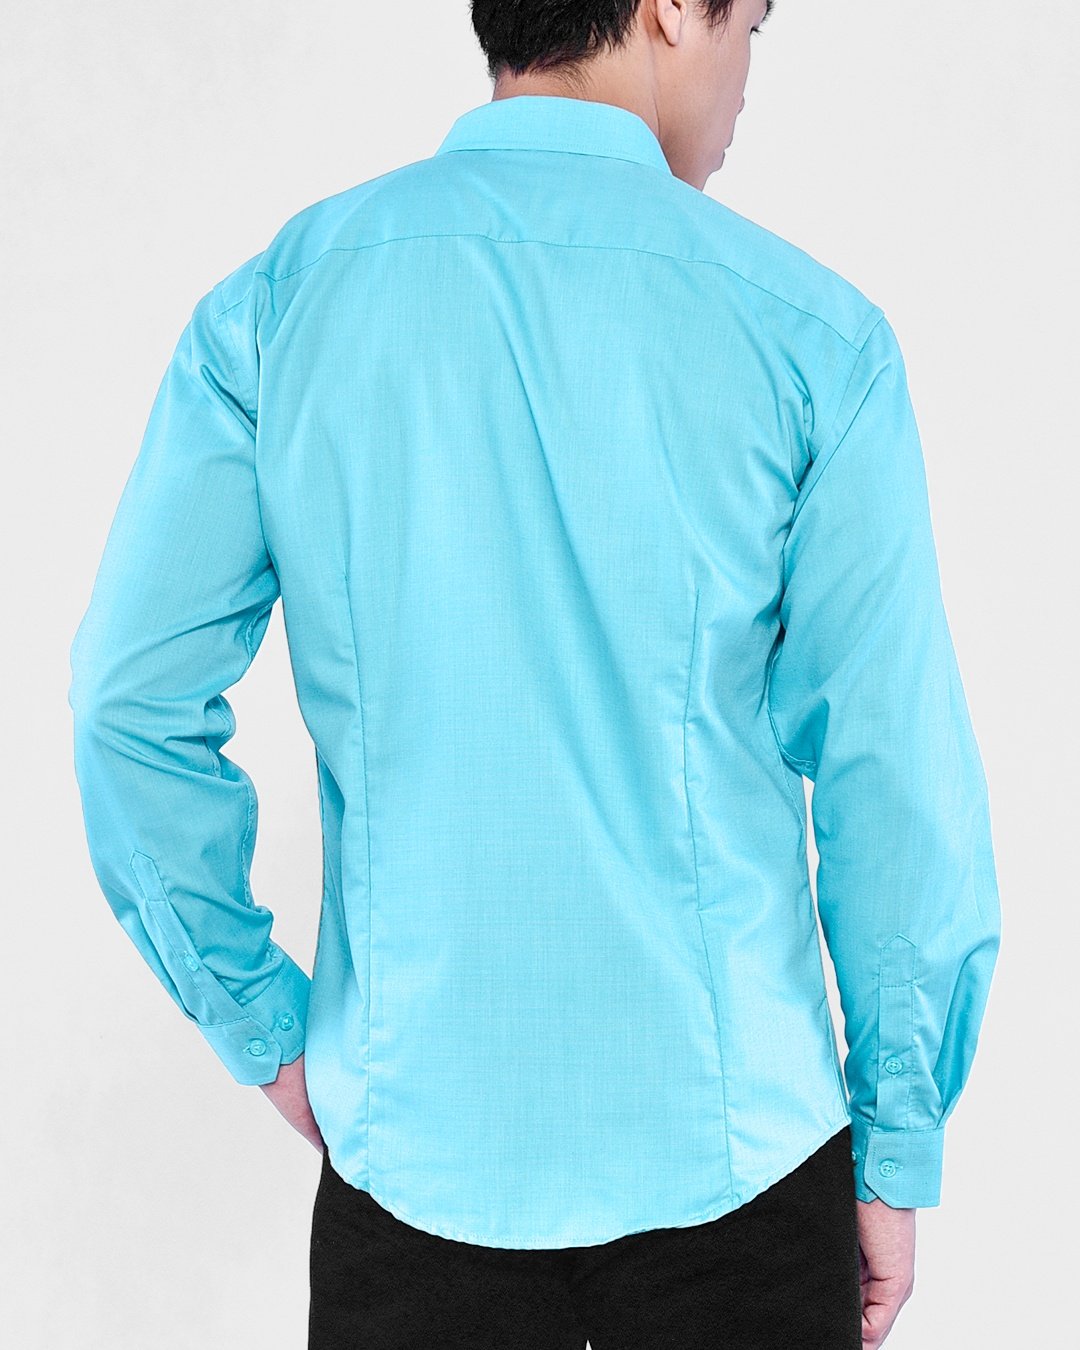 Modern Fit Long Sleeve Shirt (Hidden Button Down Collar) - Turquoise